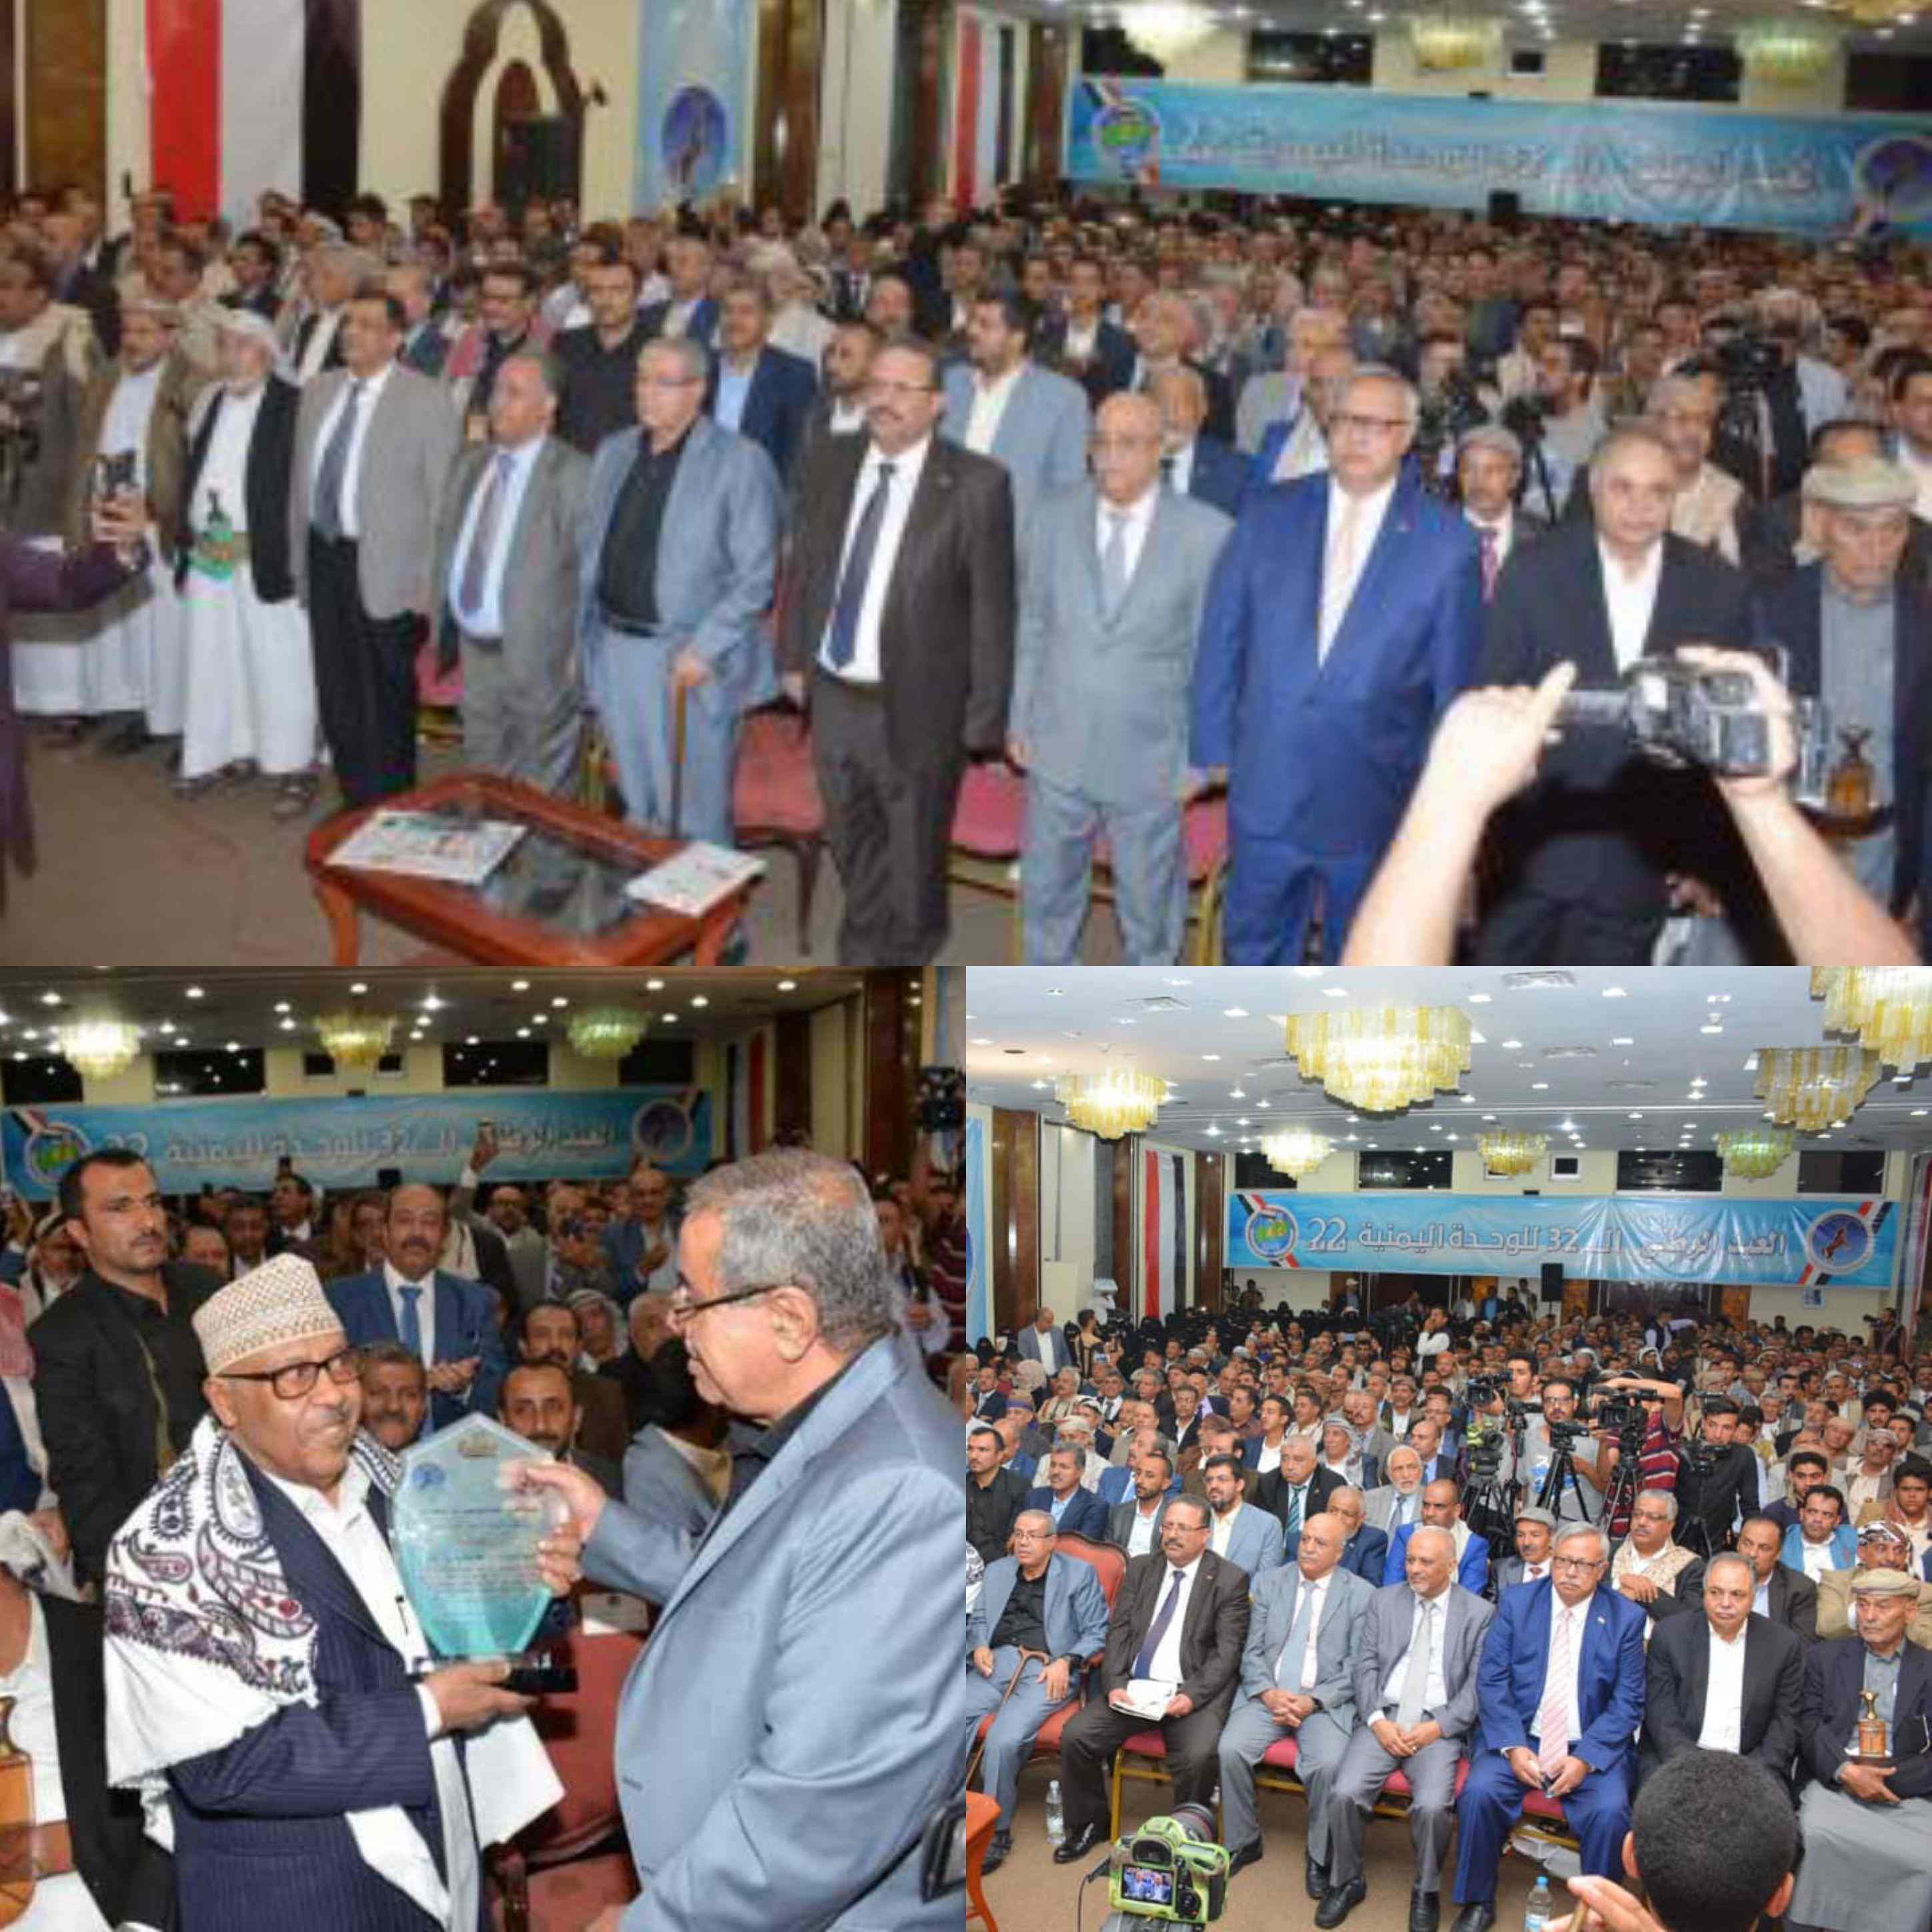 المؤتمر الشعبي العام يحتفل بالعيد الوطني ال32 للجمهورية اليمنية ويمنح الفنان أيوب طارش درع ال22 من مايو ..!!